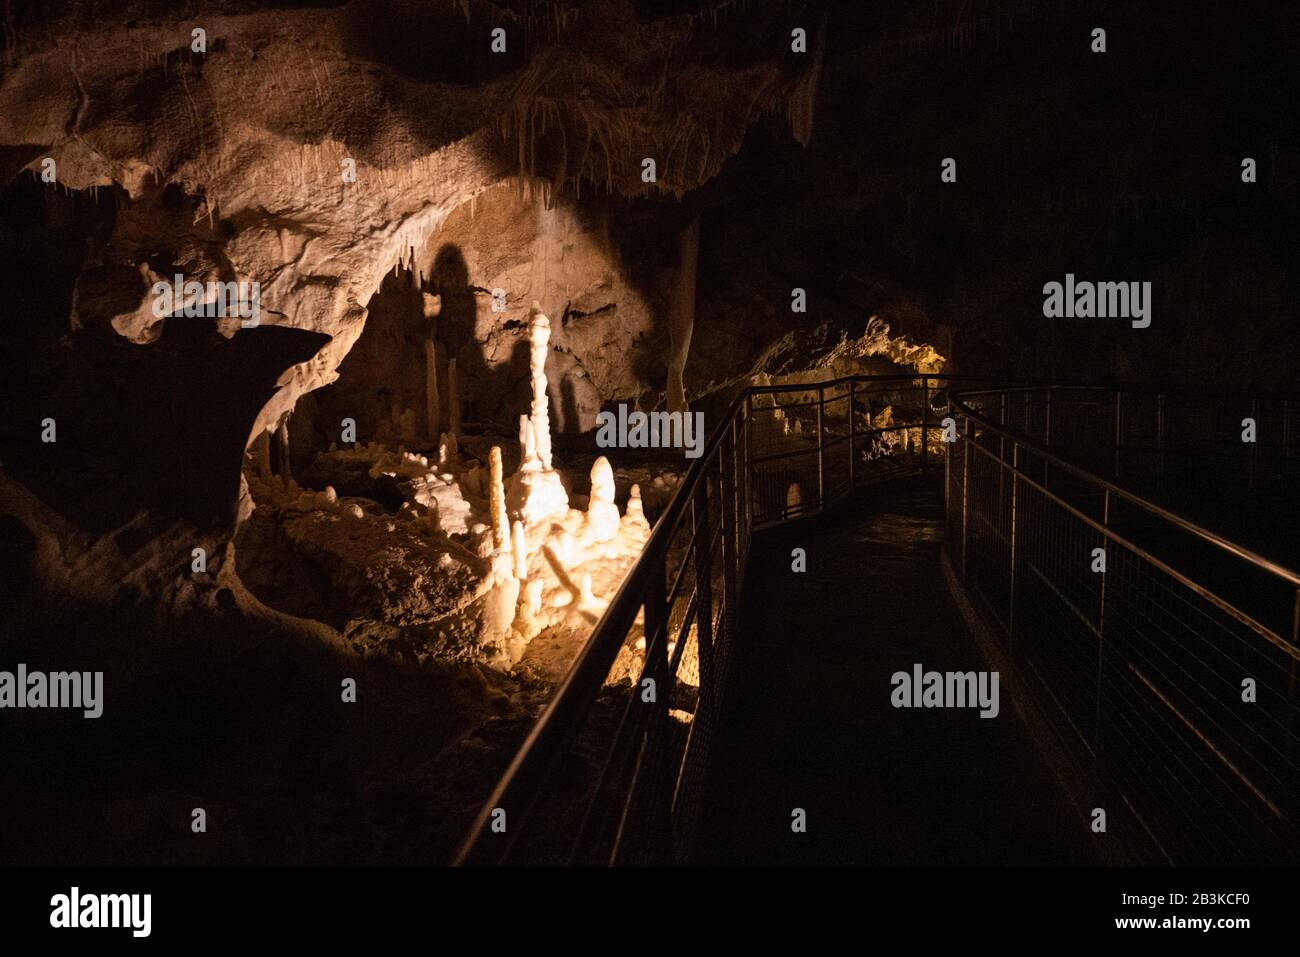 Italia, Marche, Genga, lo spettacolo naturale delle Grotte di Frasassi con stalattiti e stalagmiti affilati Foto Stock